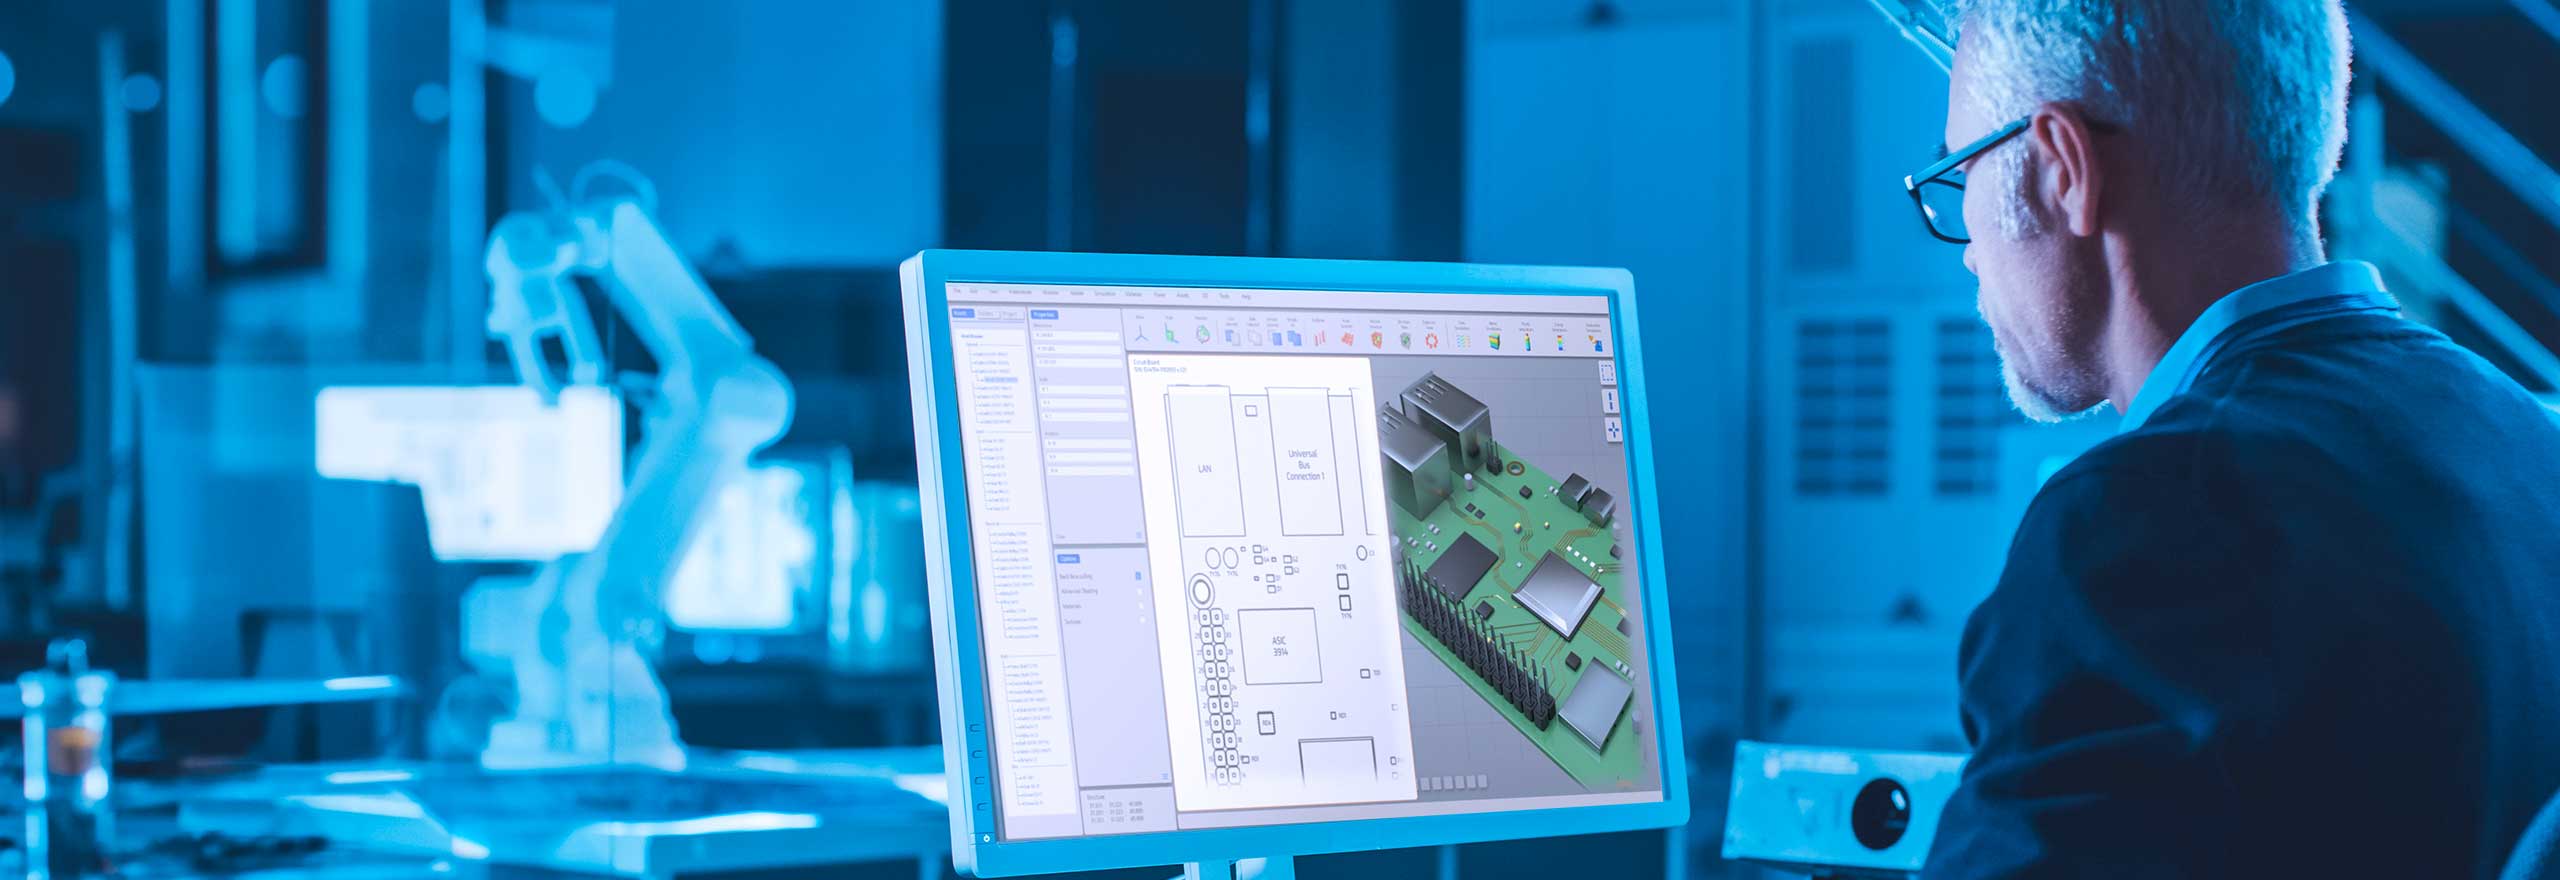 Engenheiro trabalhando no computador utilizando um software de CAD para projetar uma placa de circuito impresso (PCB)